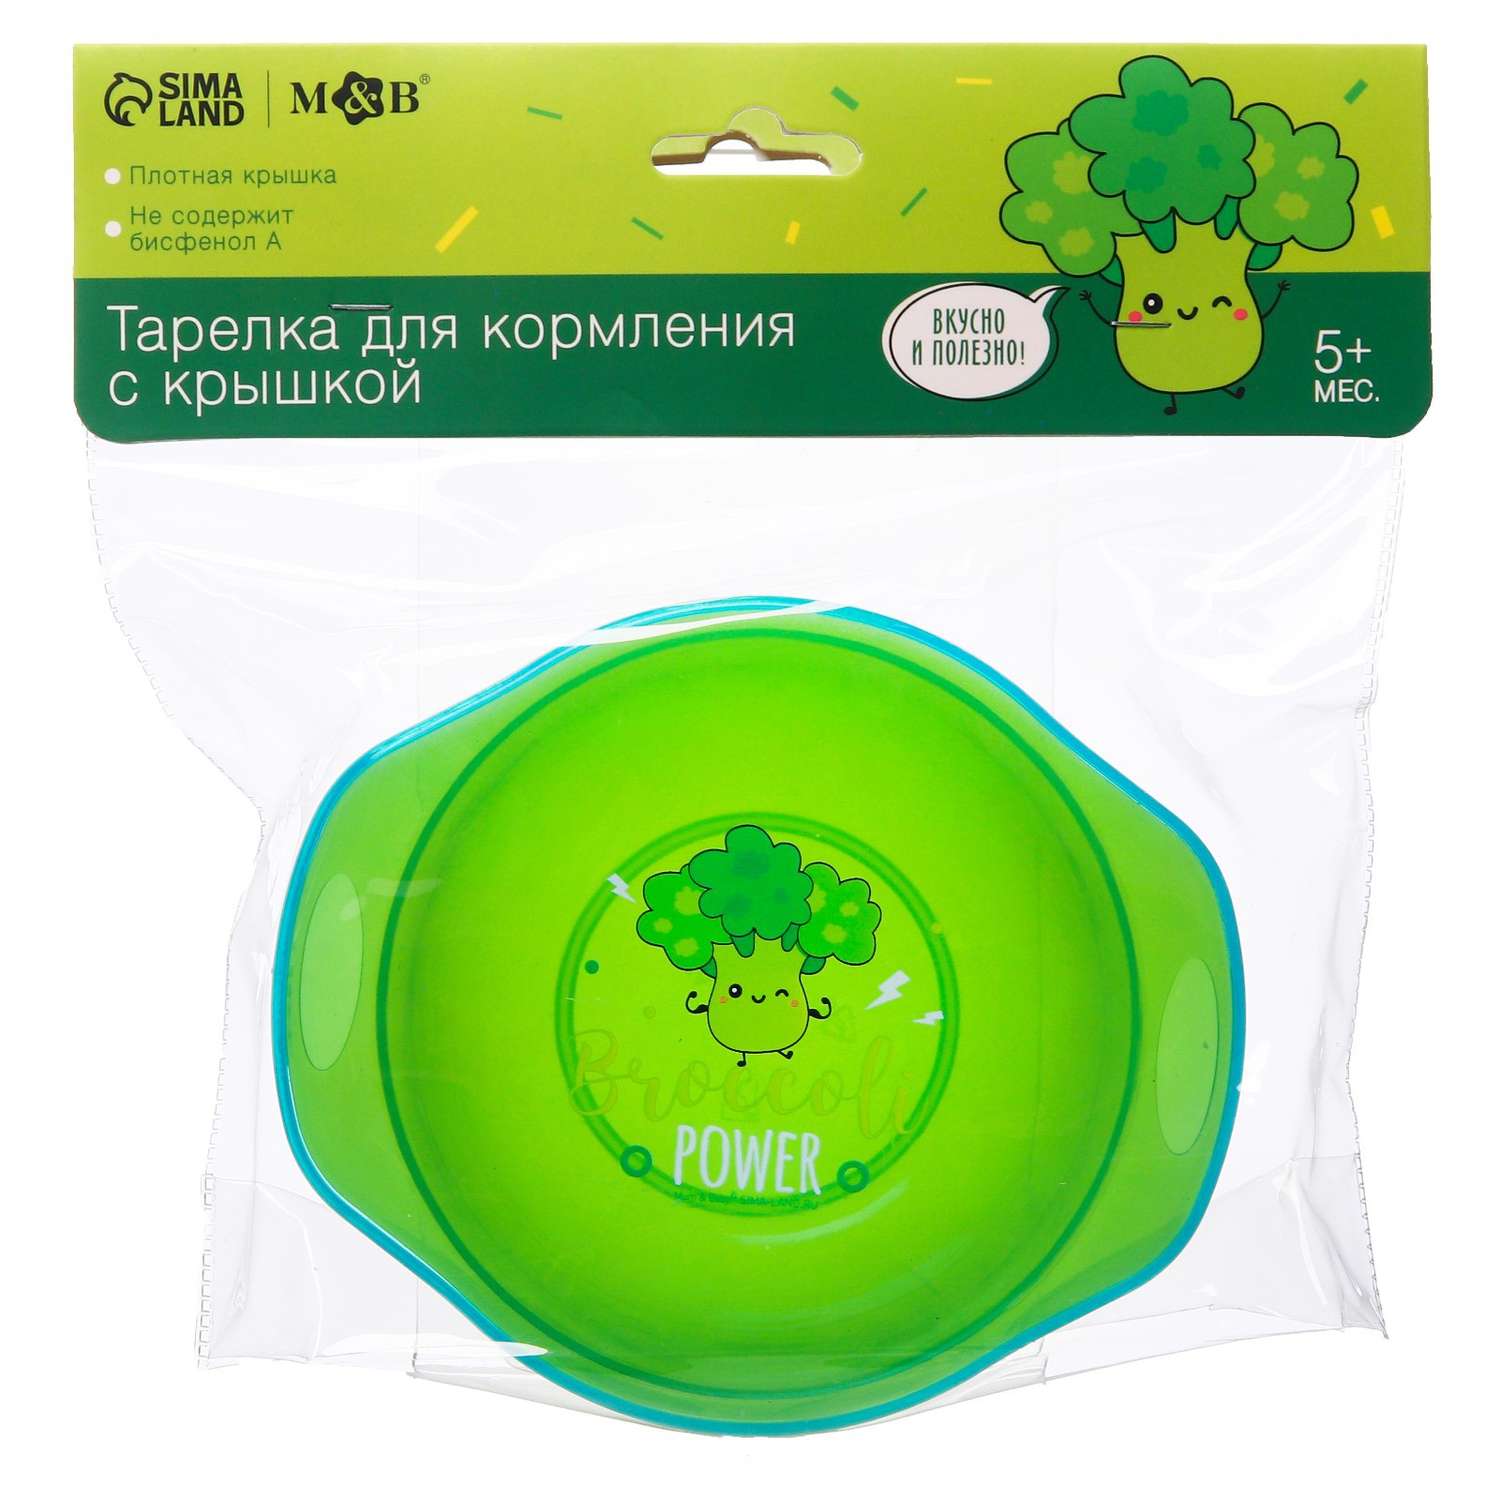 Тарелка Mum and Baby для кормления Broccoli Power c крышкой цвет зеленый - фото 4